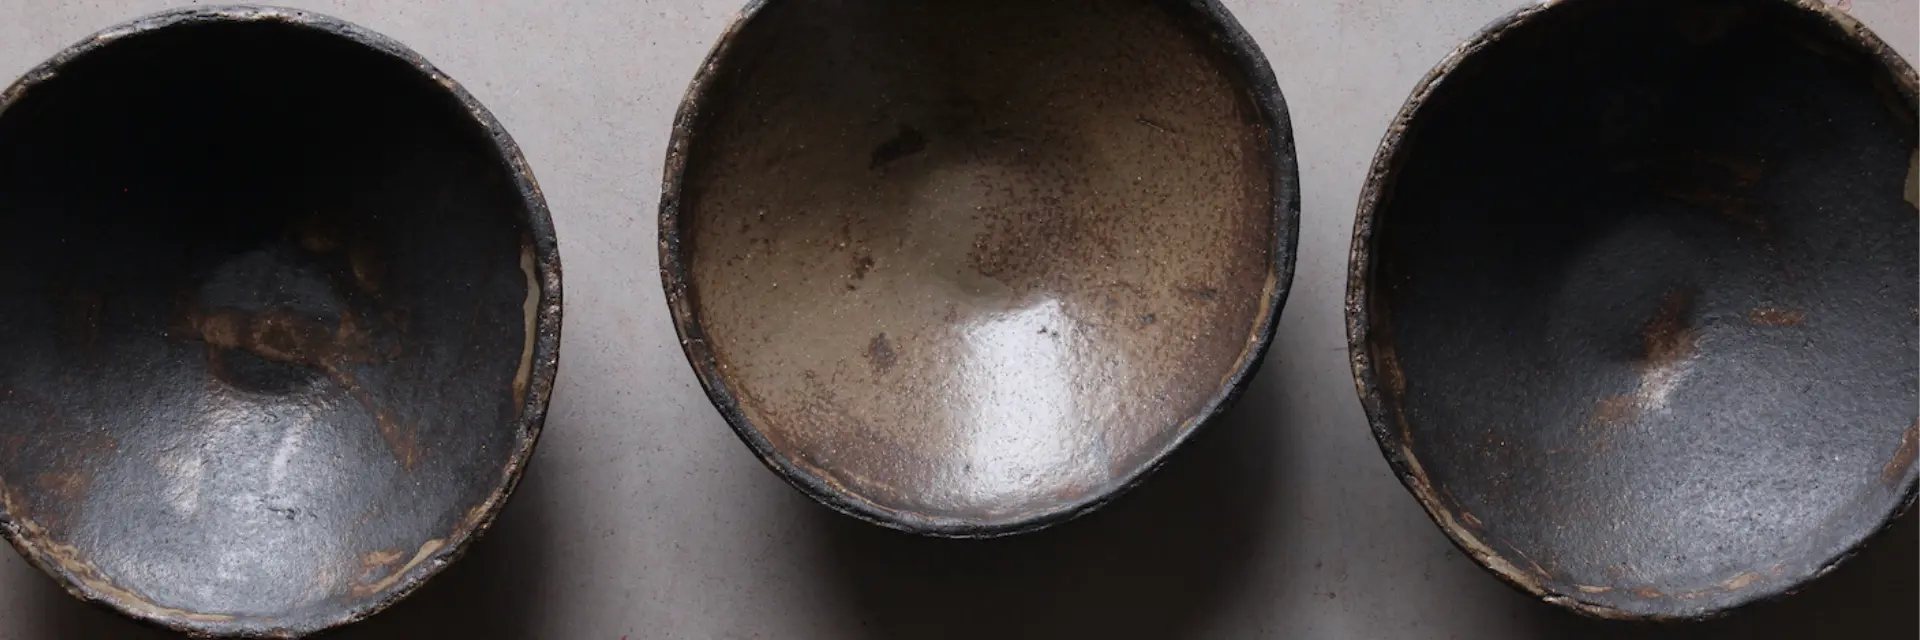 Saladier ceramique